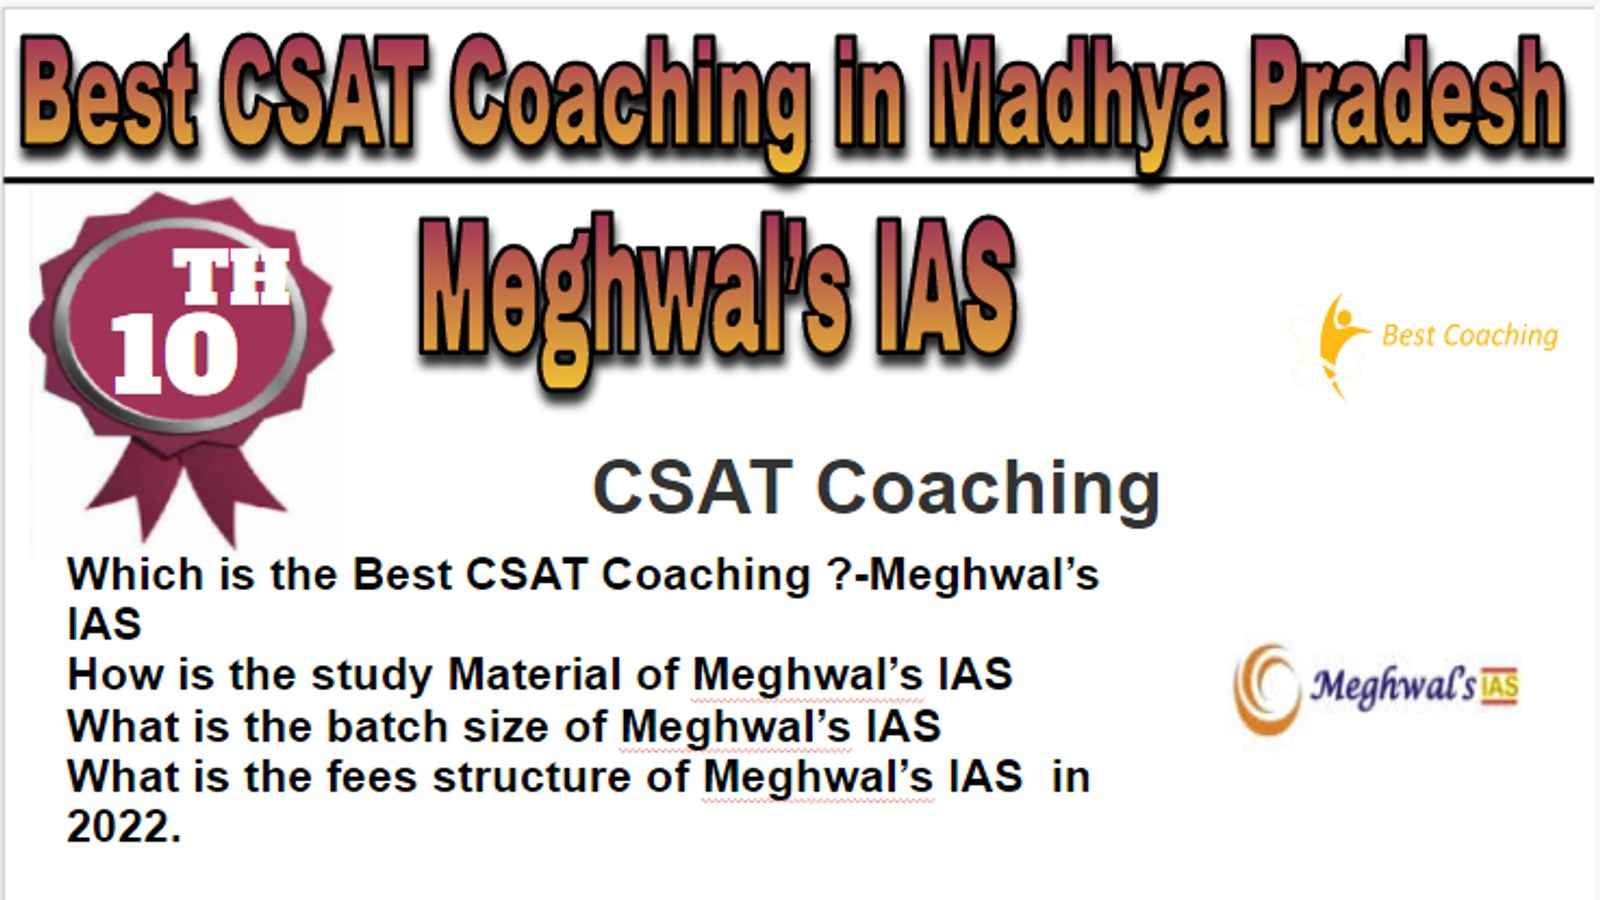 Rank 10 Best CSAT Coaching in Madhya Pradesh